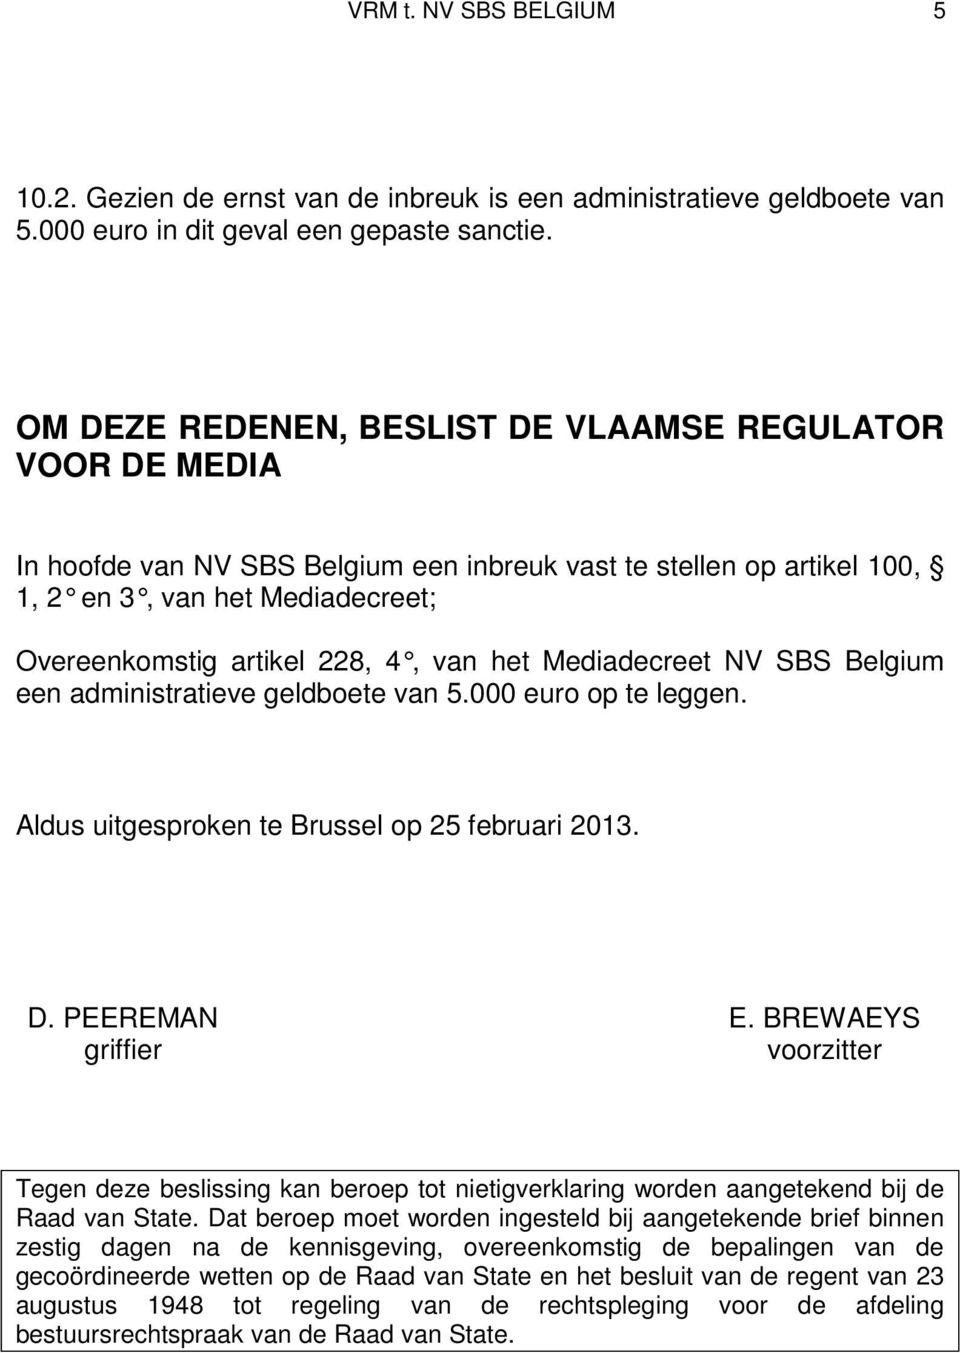 van het Mediadecreet NV SBS Belgium een administratieve geldboete van 5.000 euro op te leggen. Aldus uitgesproken te Brussel op 25 februari 2013. D. PEEREMAN E.